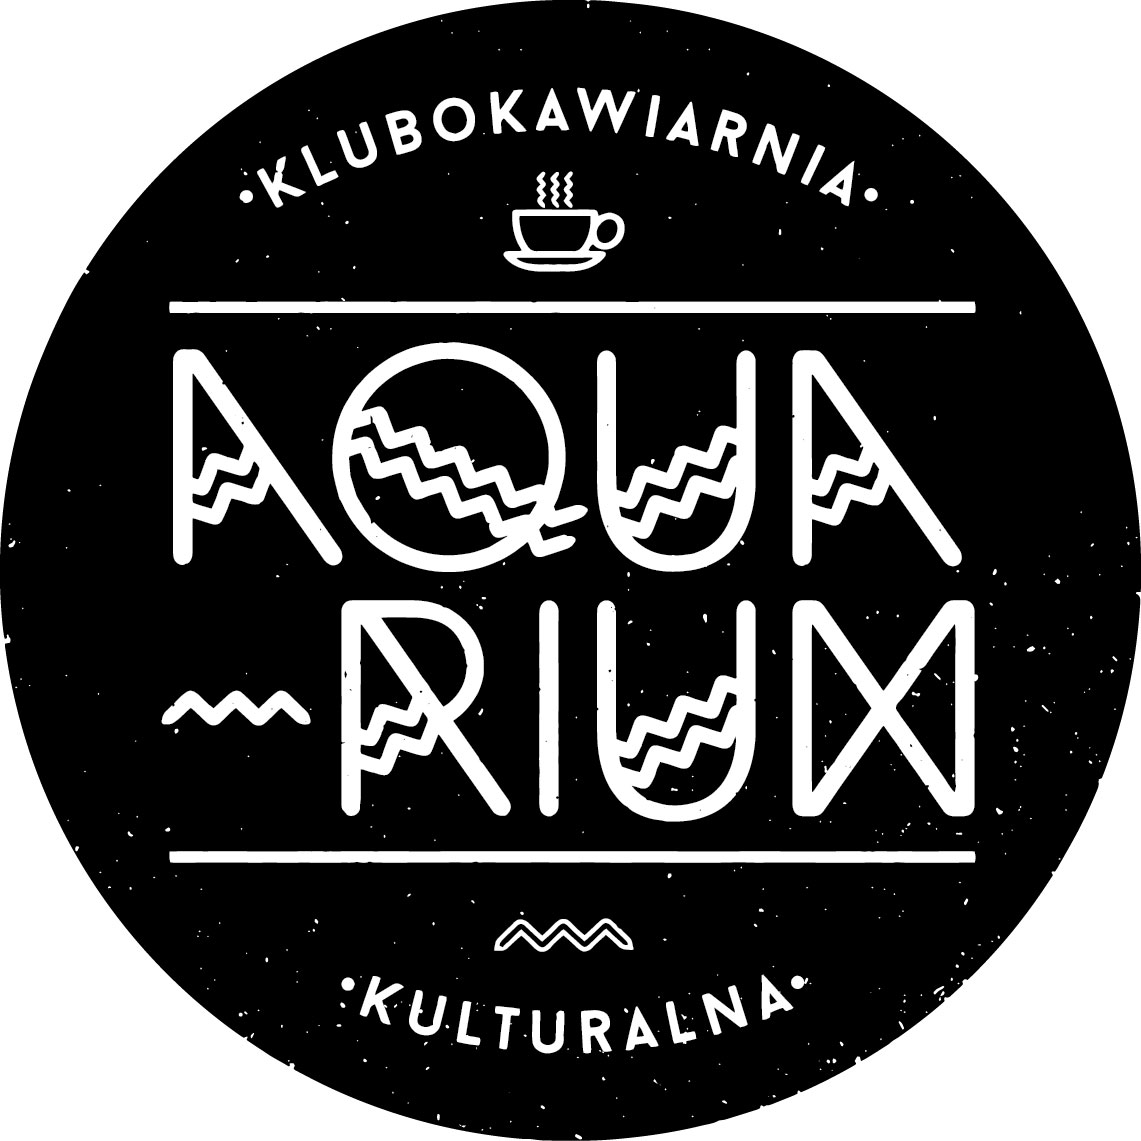  Warsztaty ceramiczne
 Na zdjęciu logo Aquarium